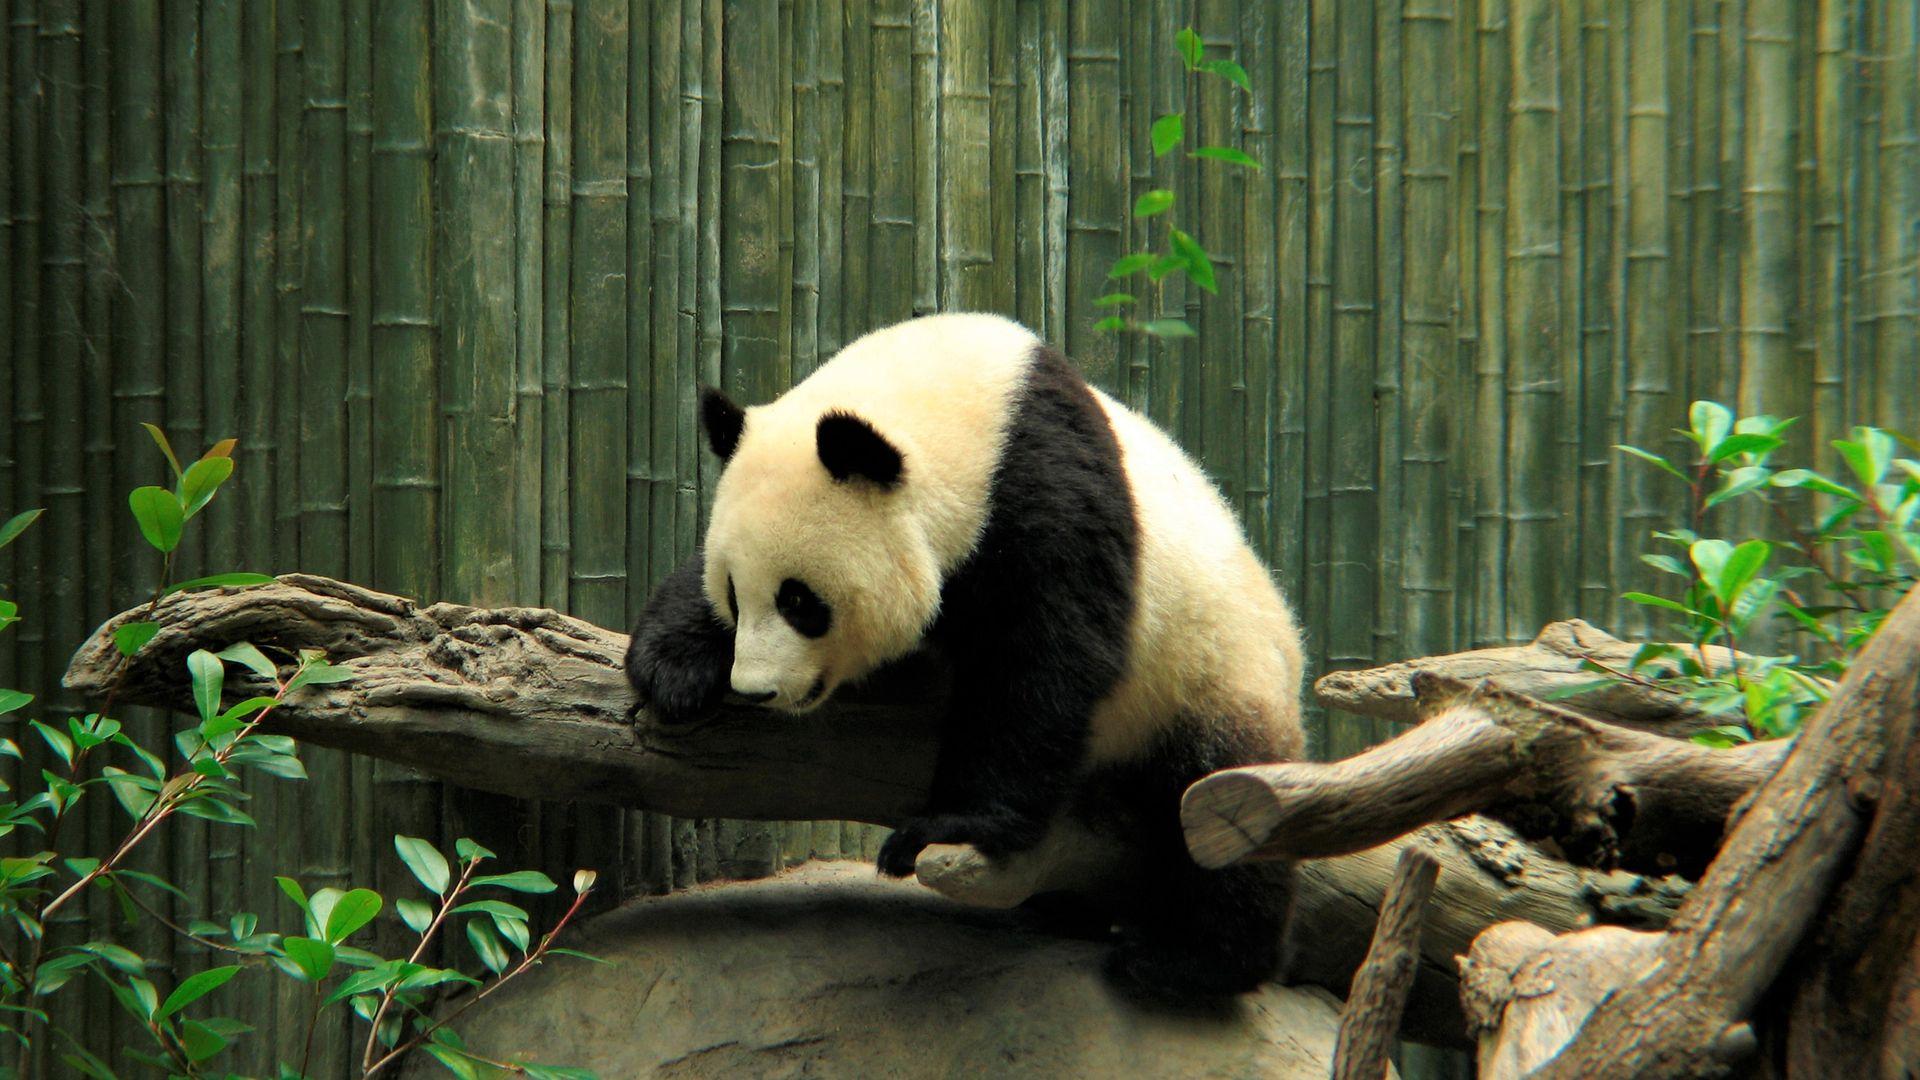 Zoo Cute Panda Wallpaper Panda